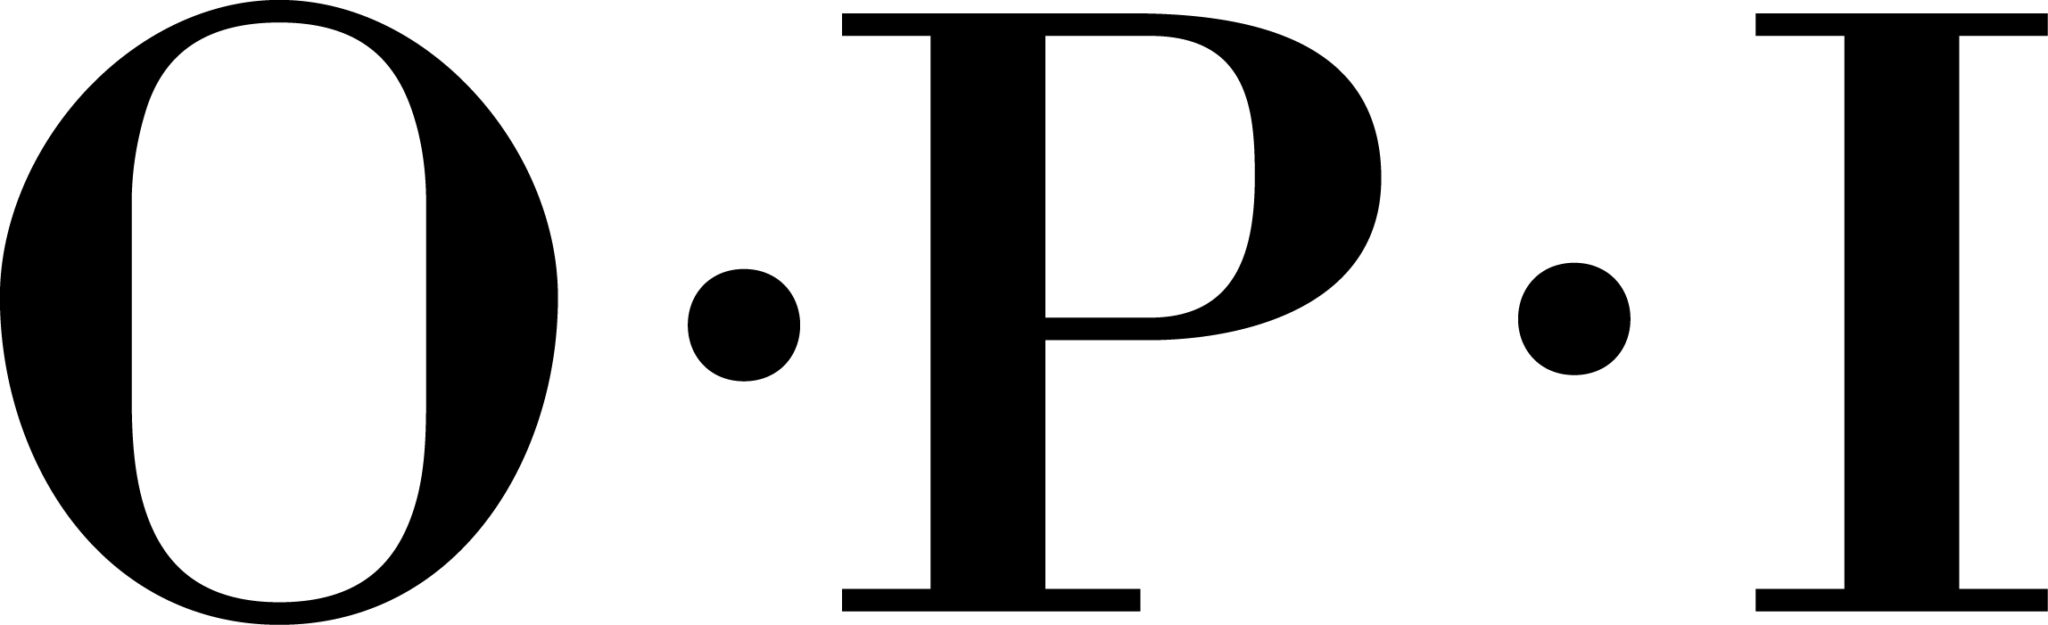 mercredie-blog-mode-opi-nail-polish-art-vernis-logo